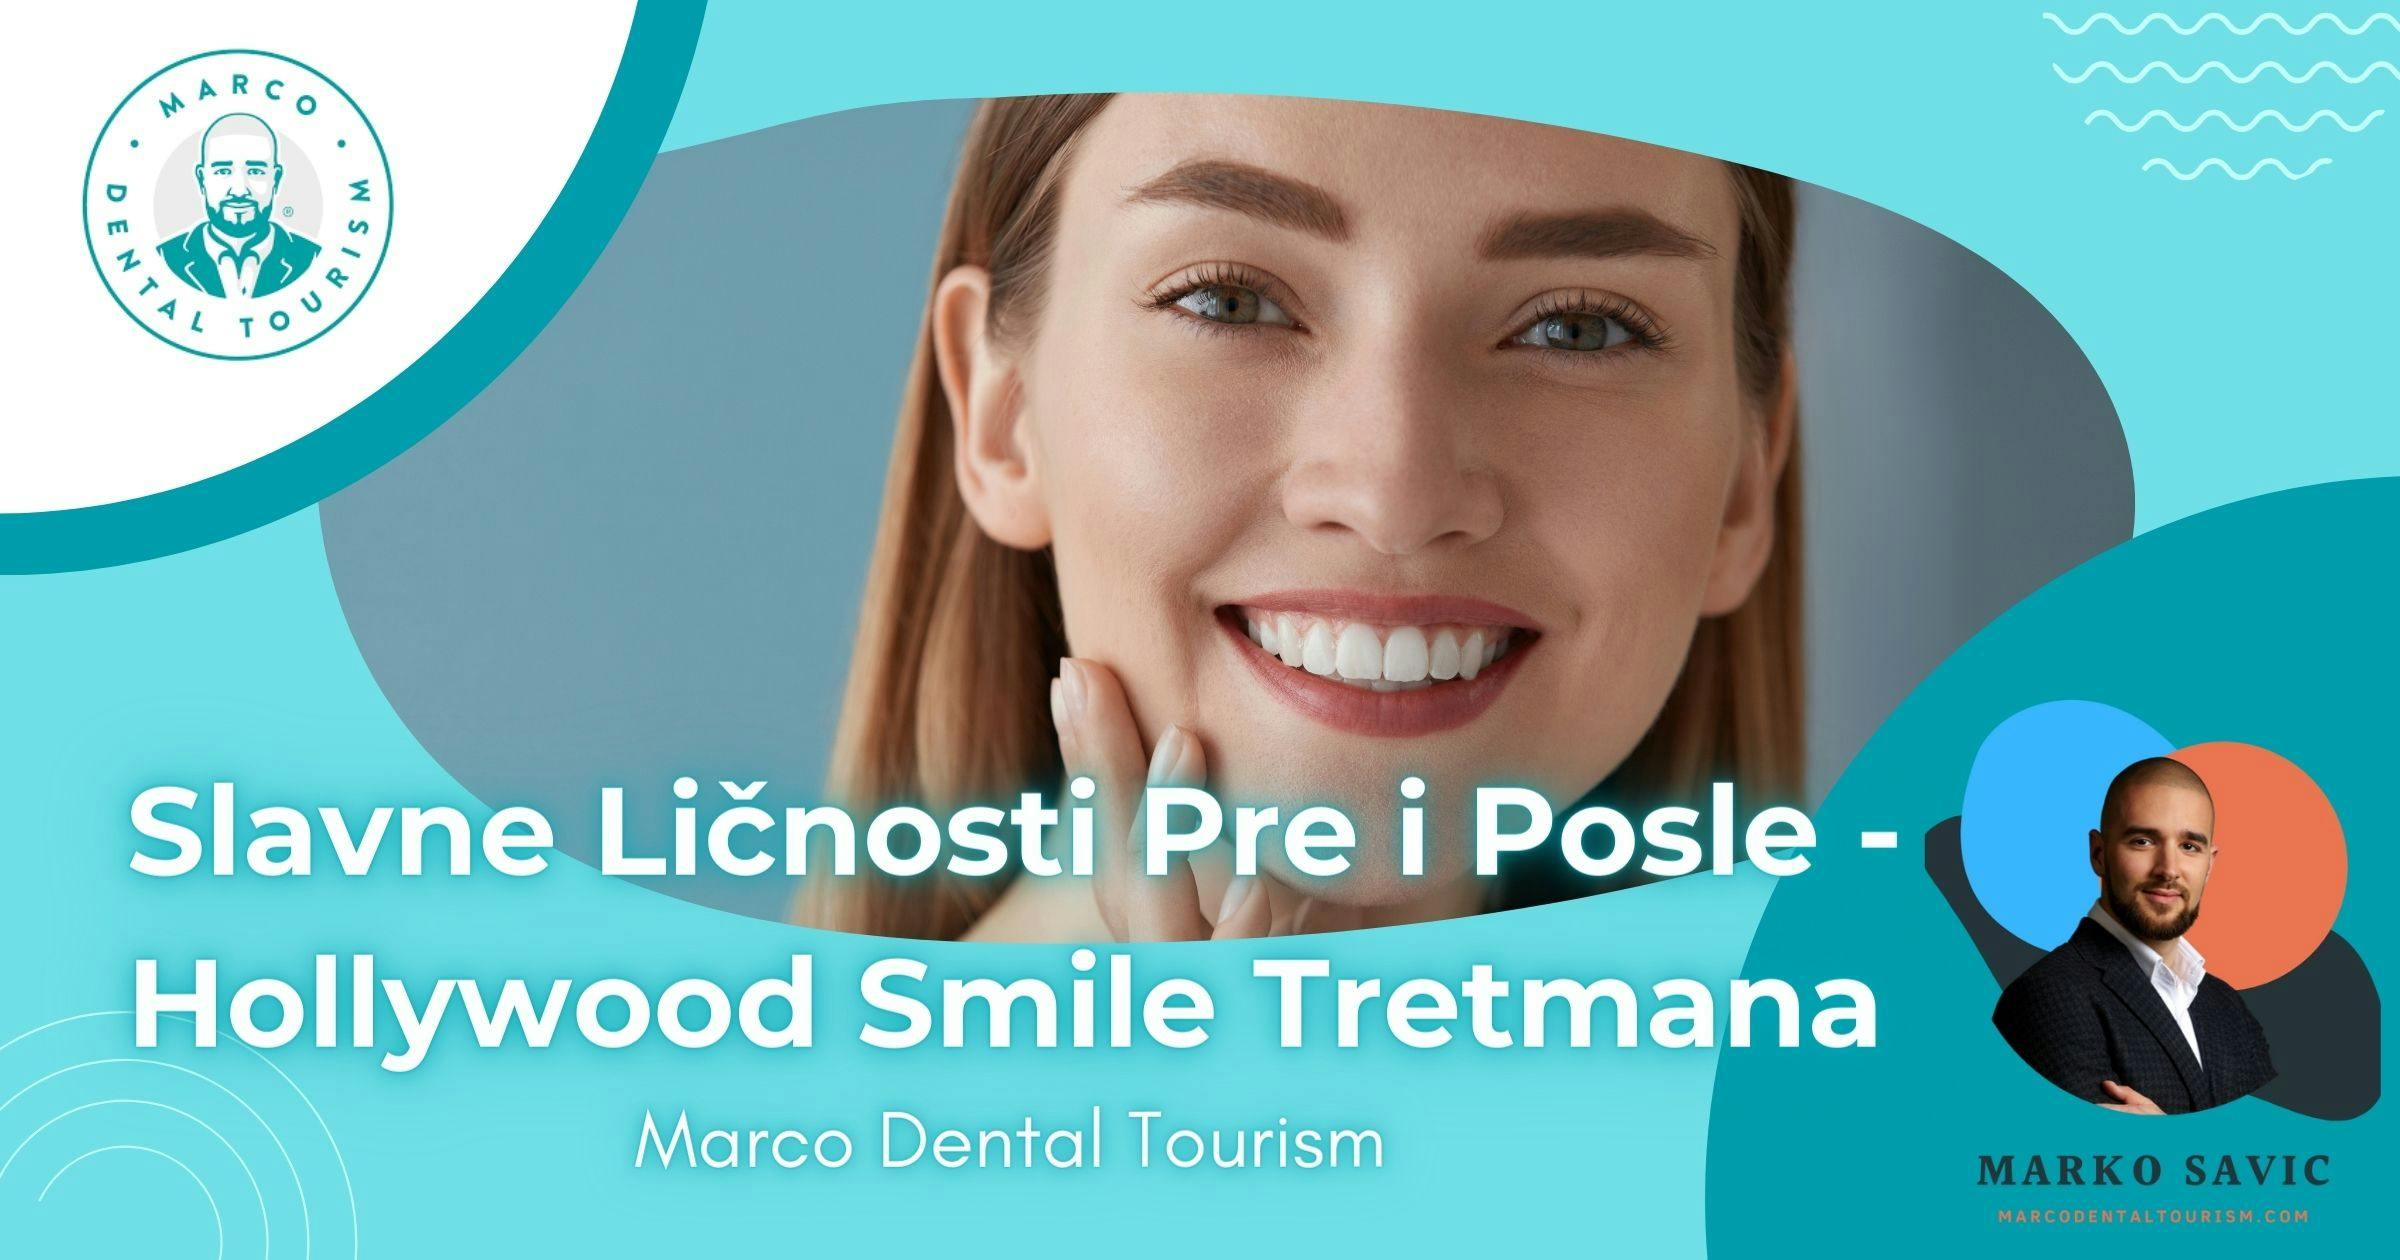 Slavne Ličnosti Pre i Posle - Hollywood Smile Tretmana - Marco Dental Tourism